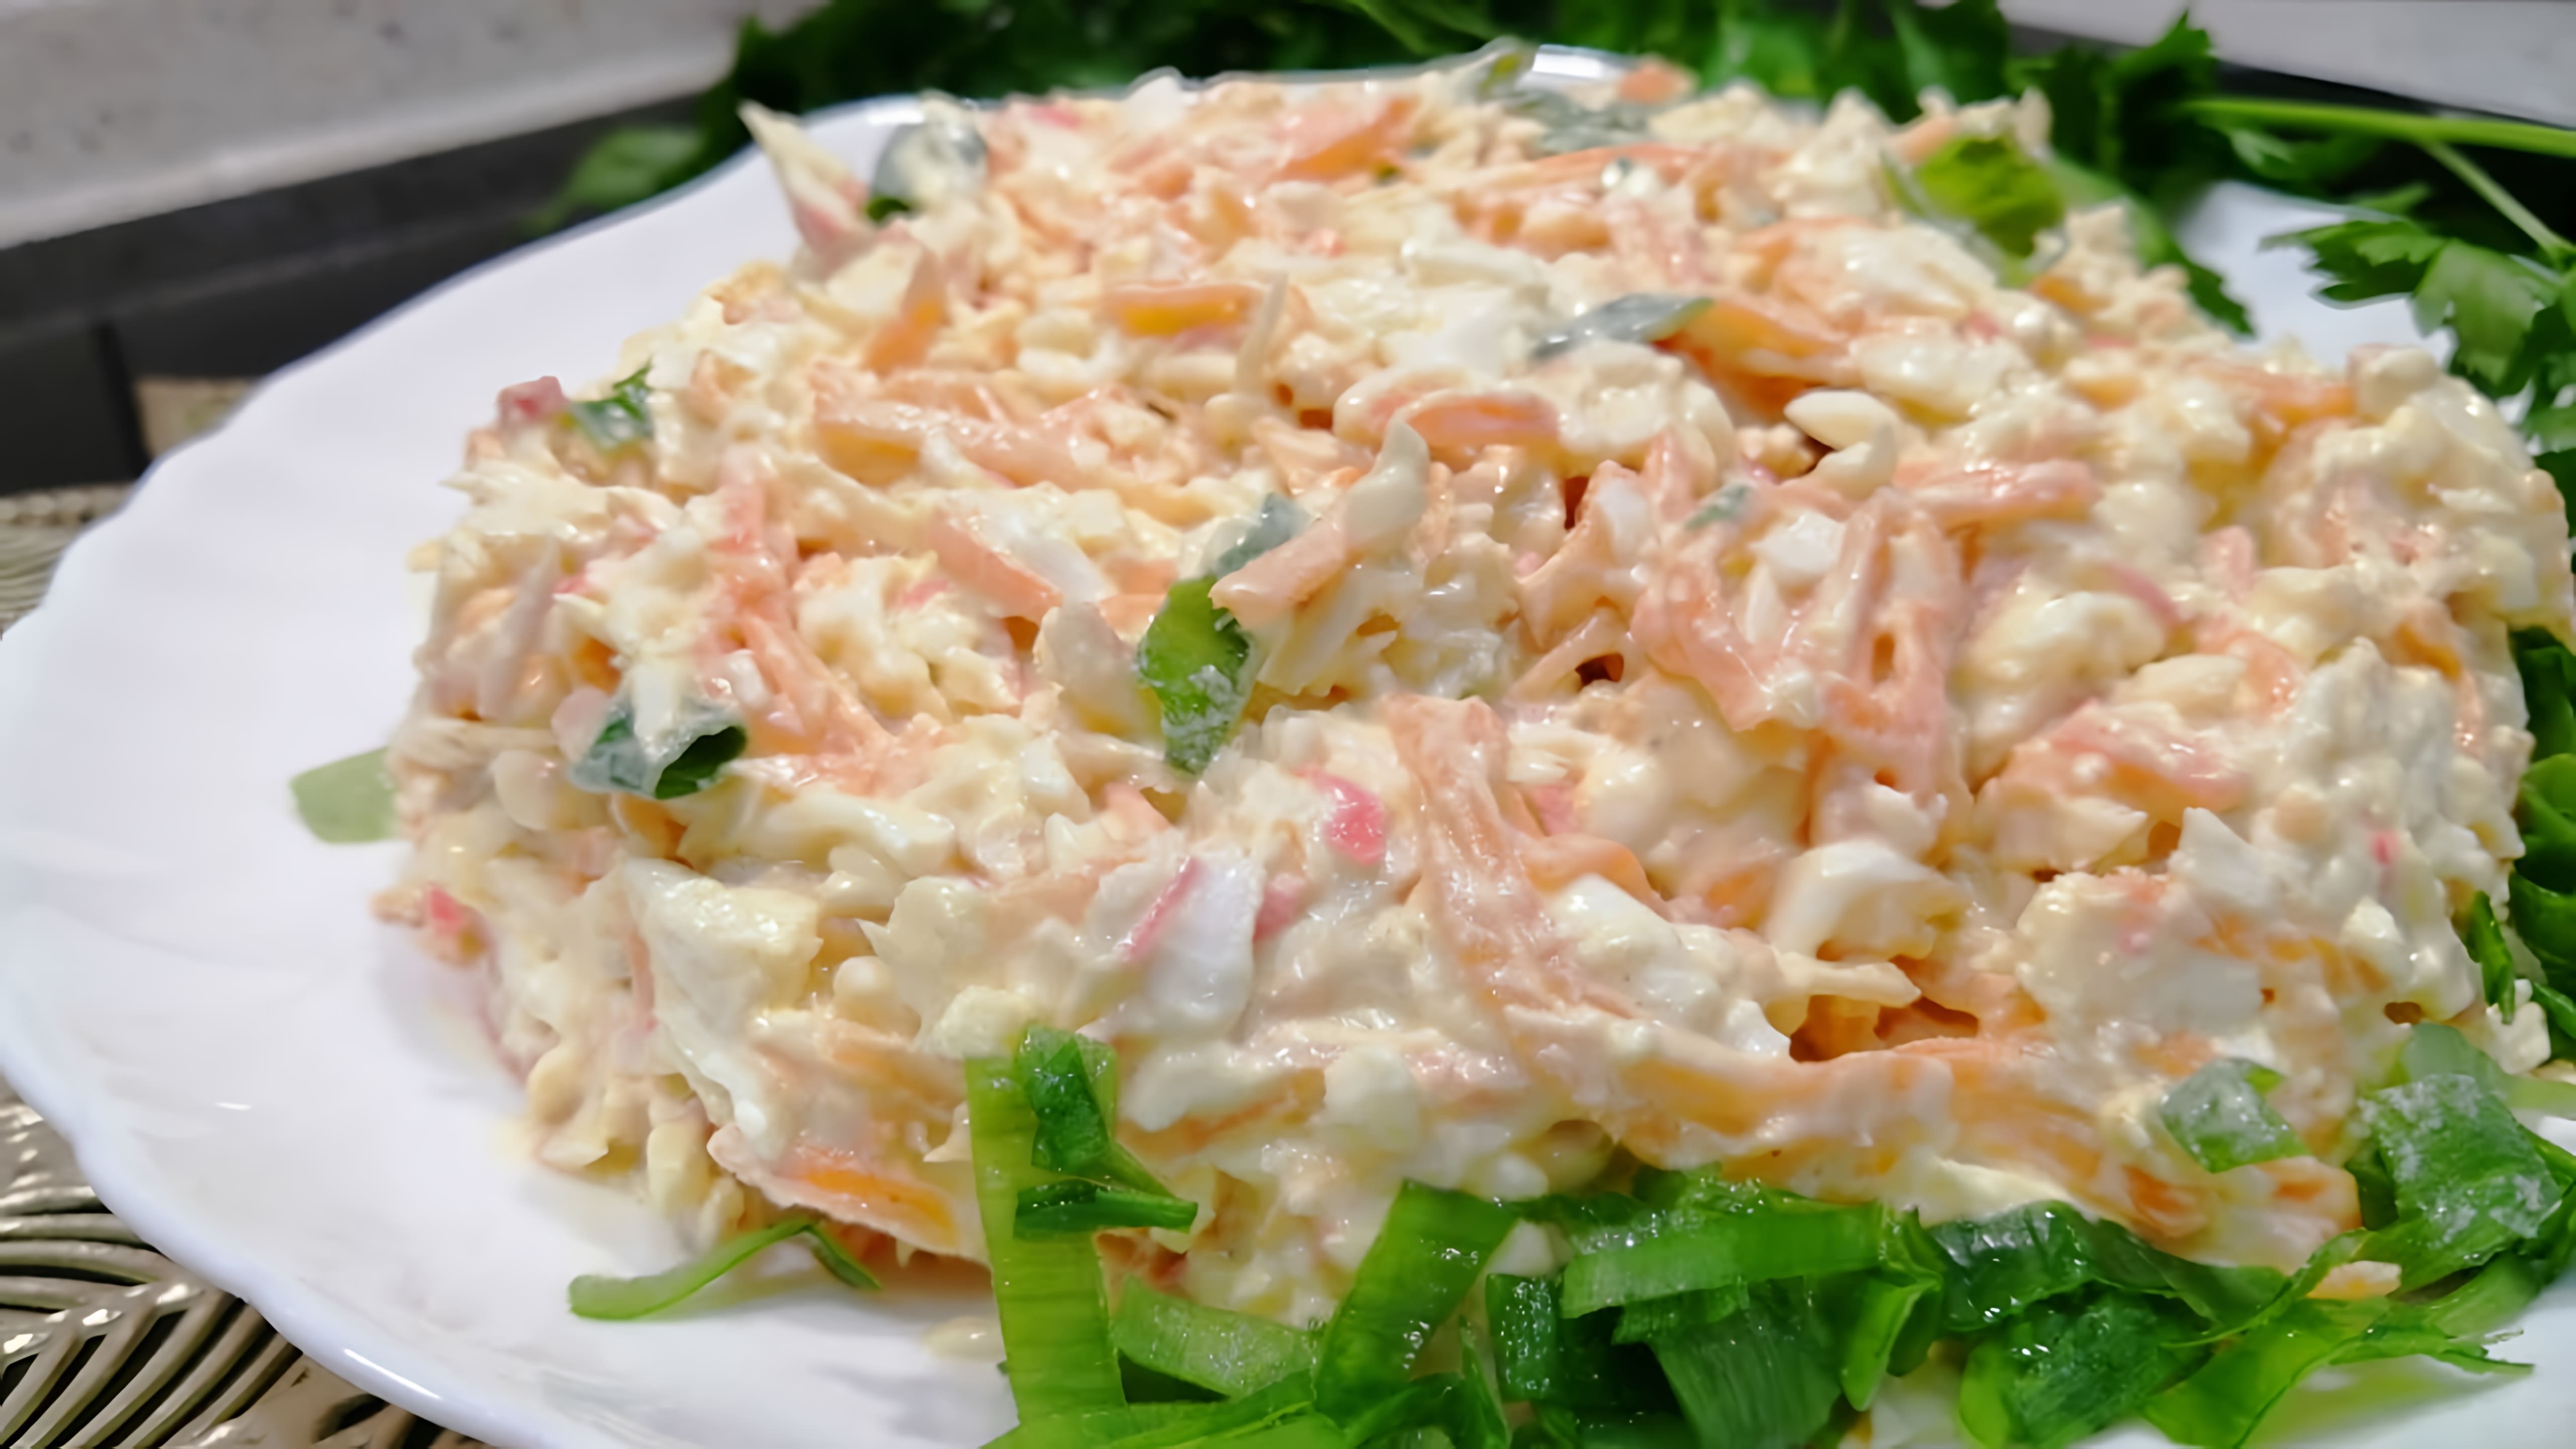 В этом видео демонстрируется рецепт быстрого и вкусного салата "Моментальный"